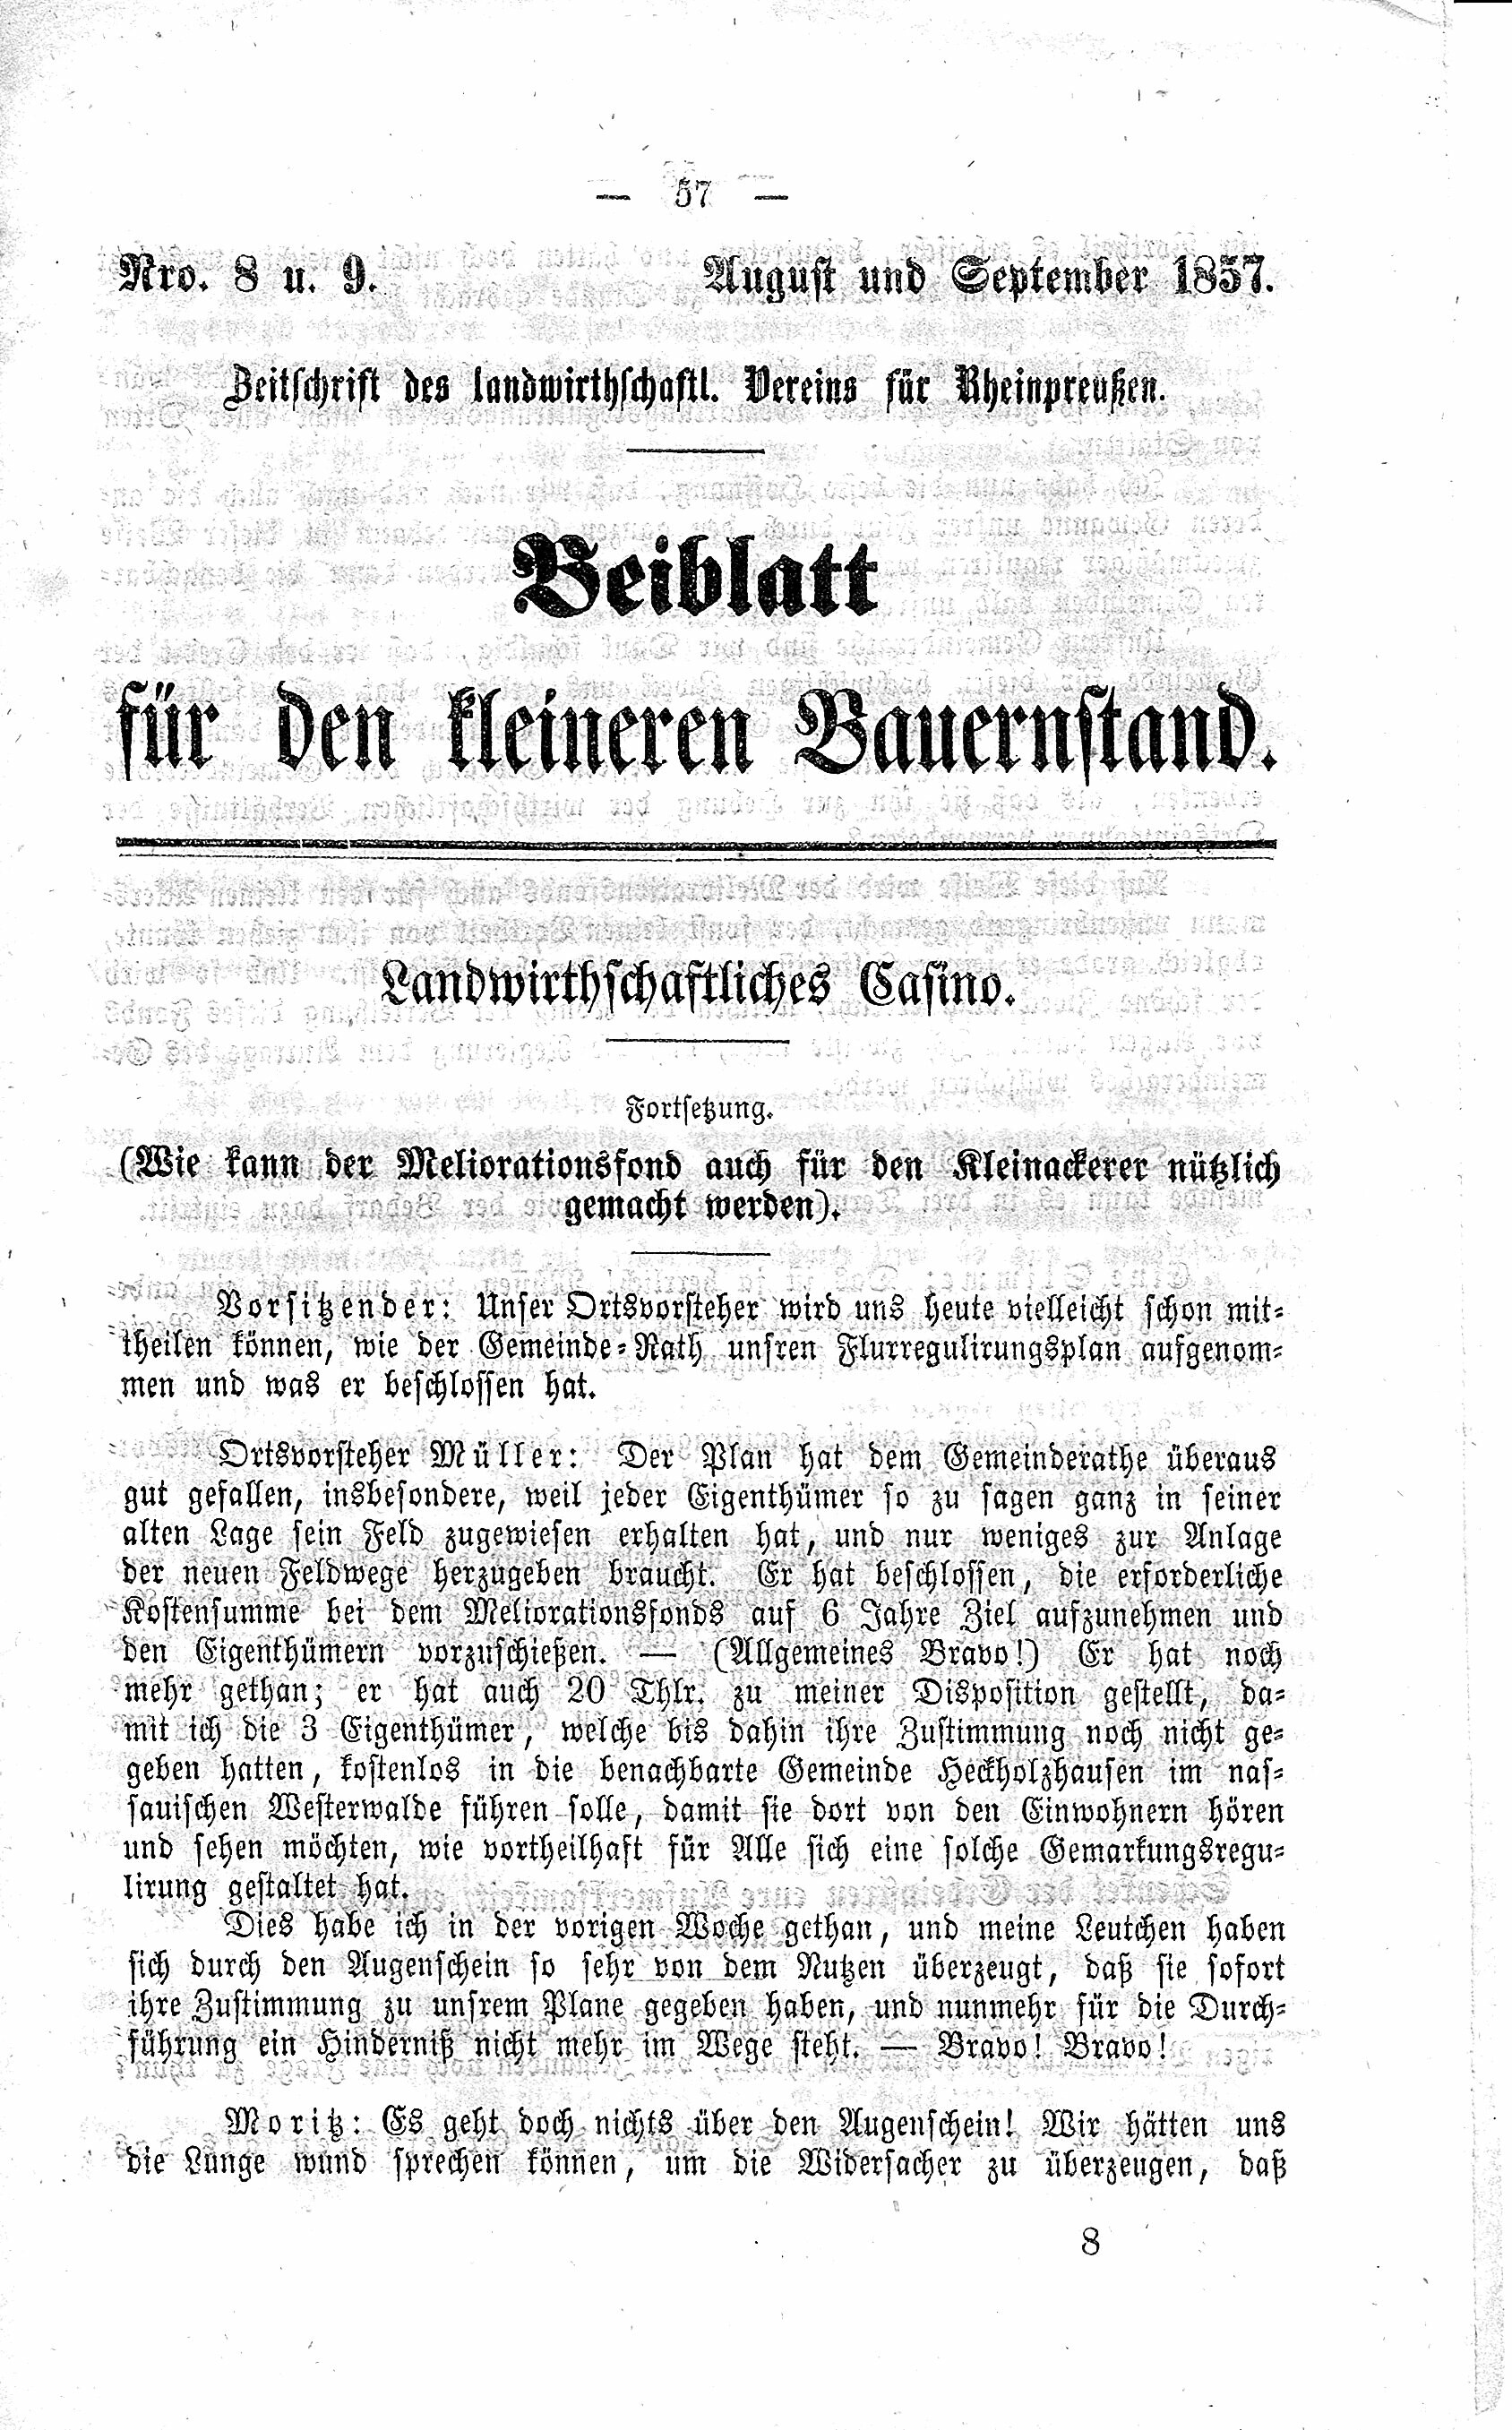 Beiblatt für den kleinen Bauernstand August/September 1857 (Volkskunde- und Freilichtmuseum Roscheider Hof CC0)